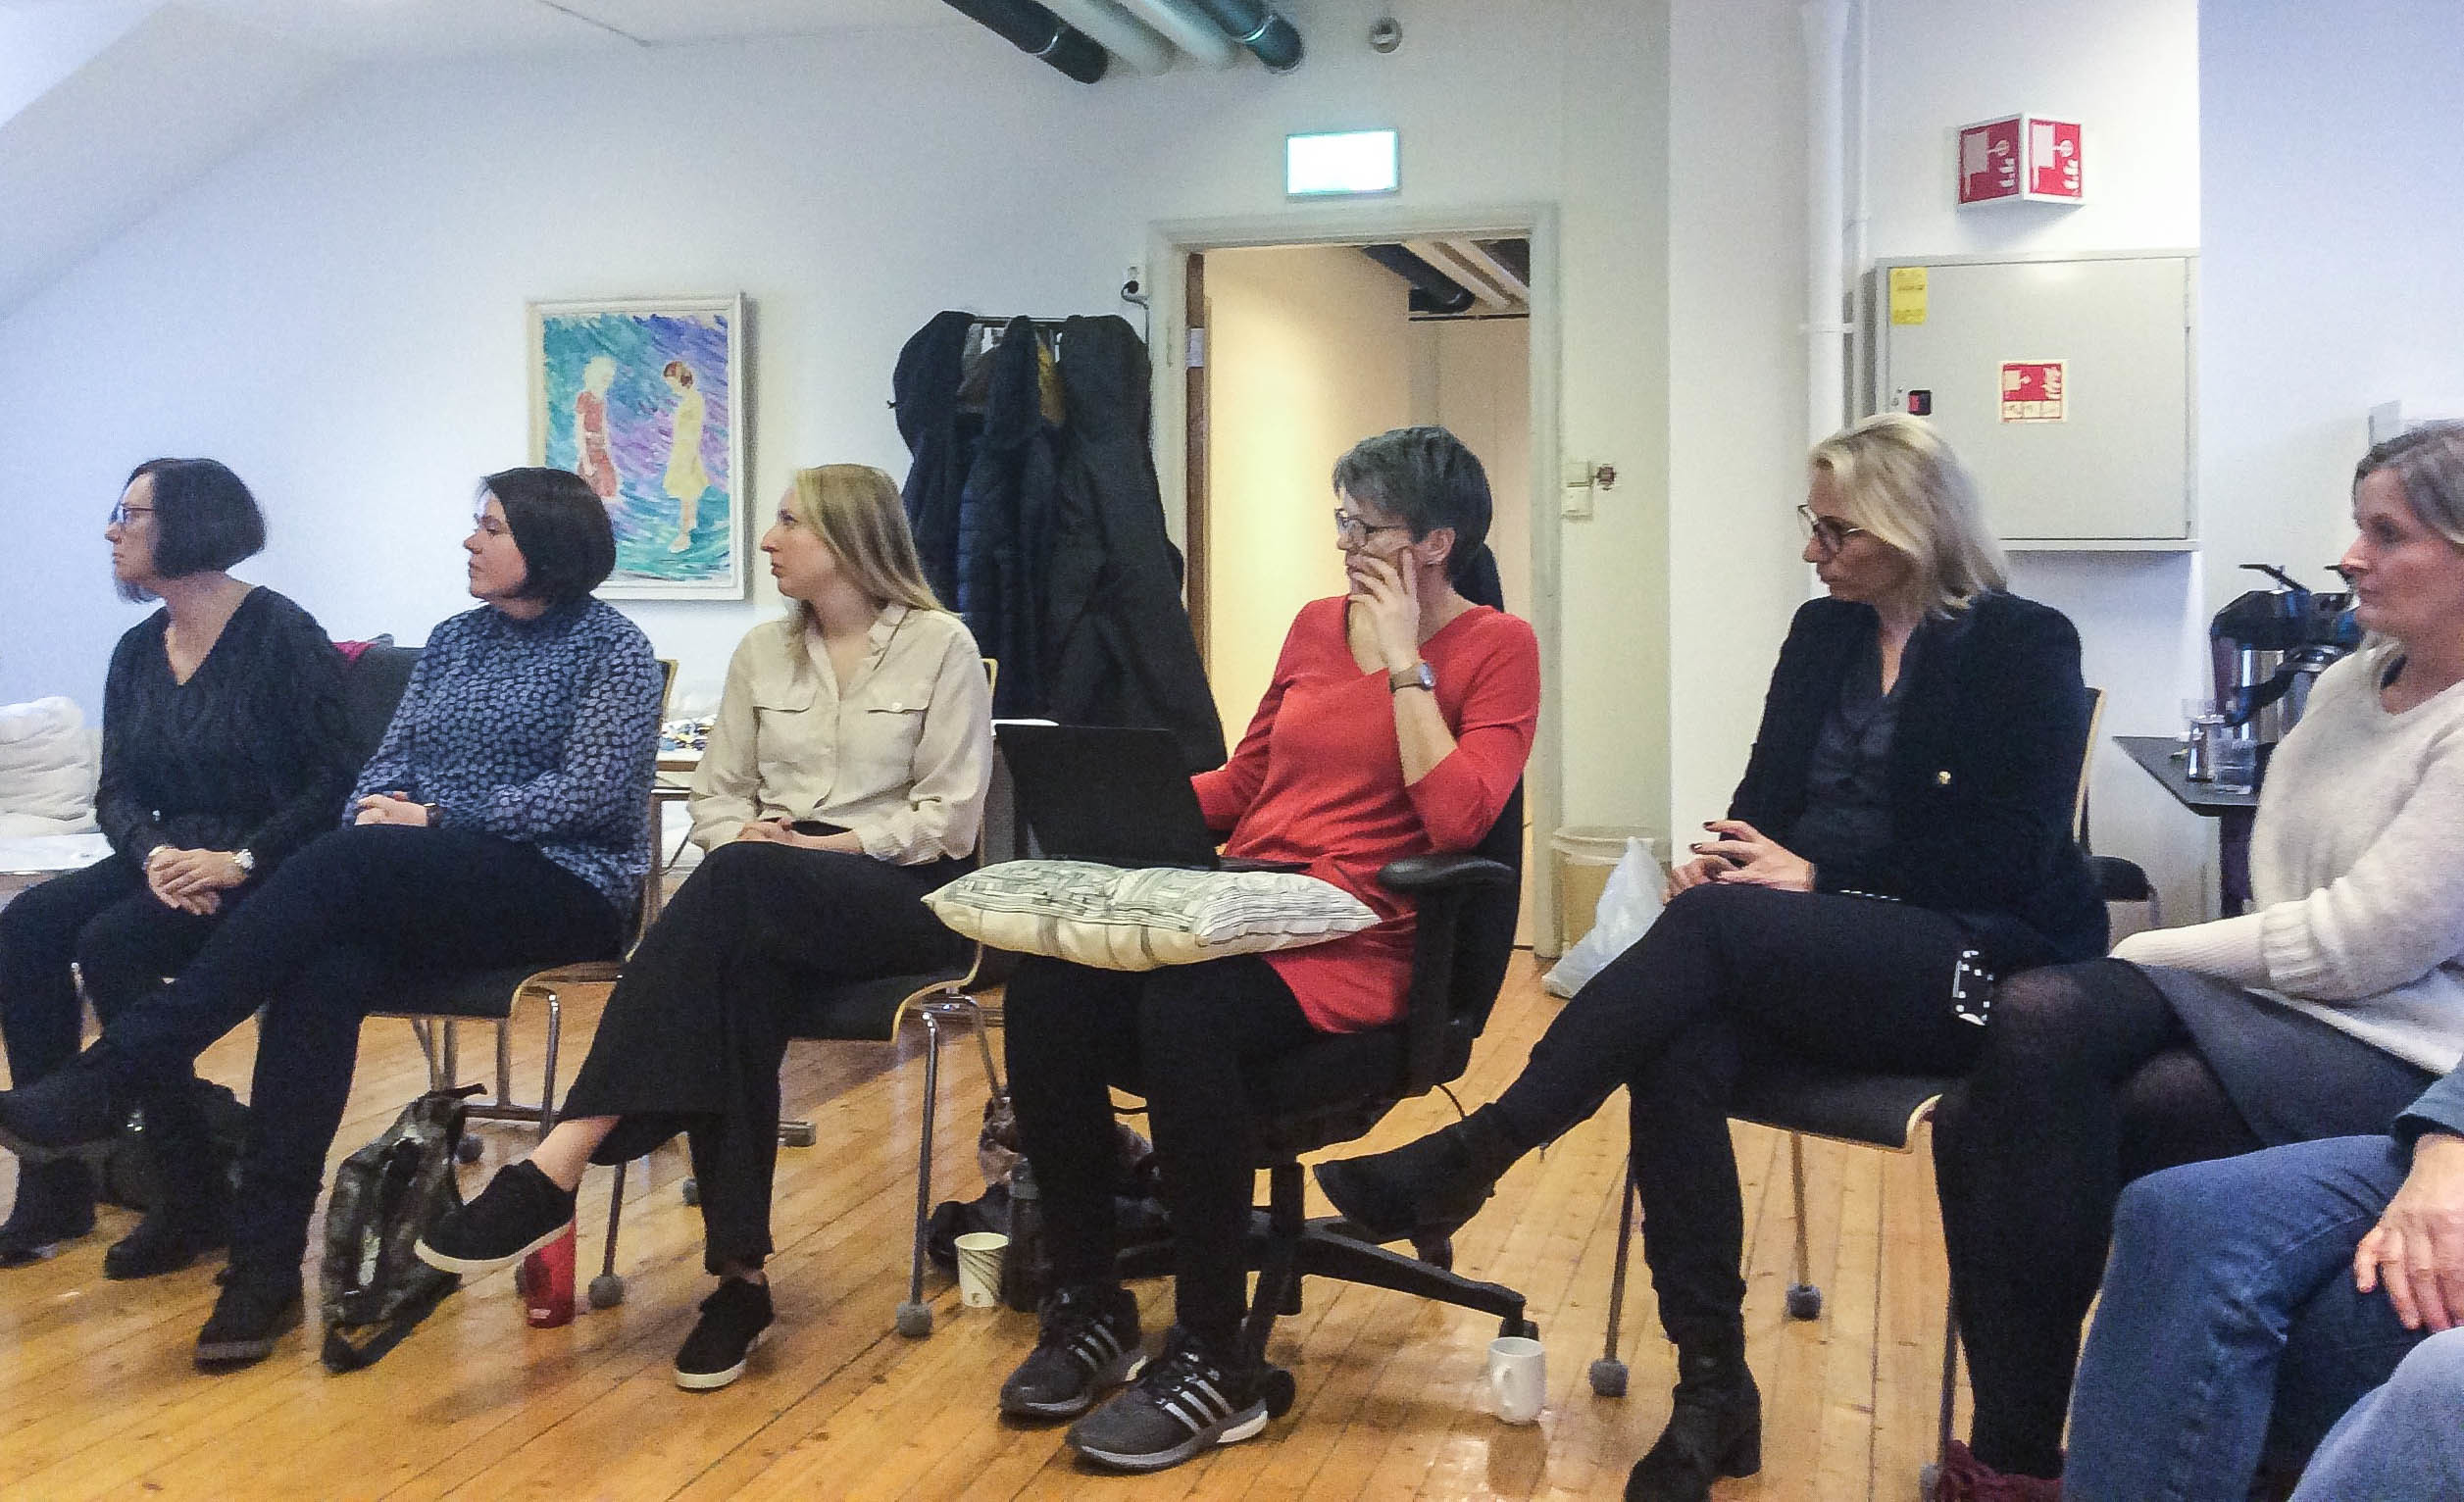 Seks kvinner sitter i en halvmåne etter hverandre i et møterom. De ser alle mot venstre i bildet.